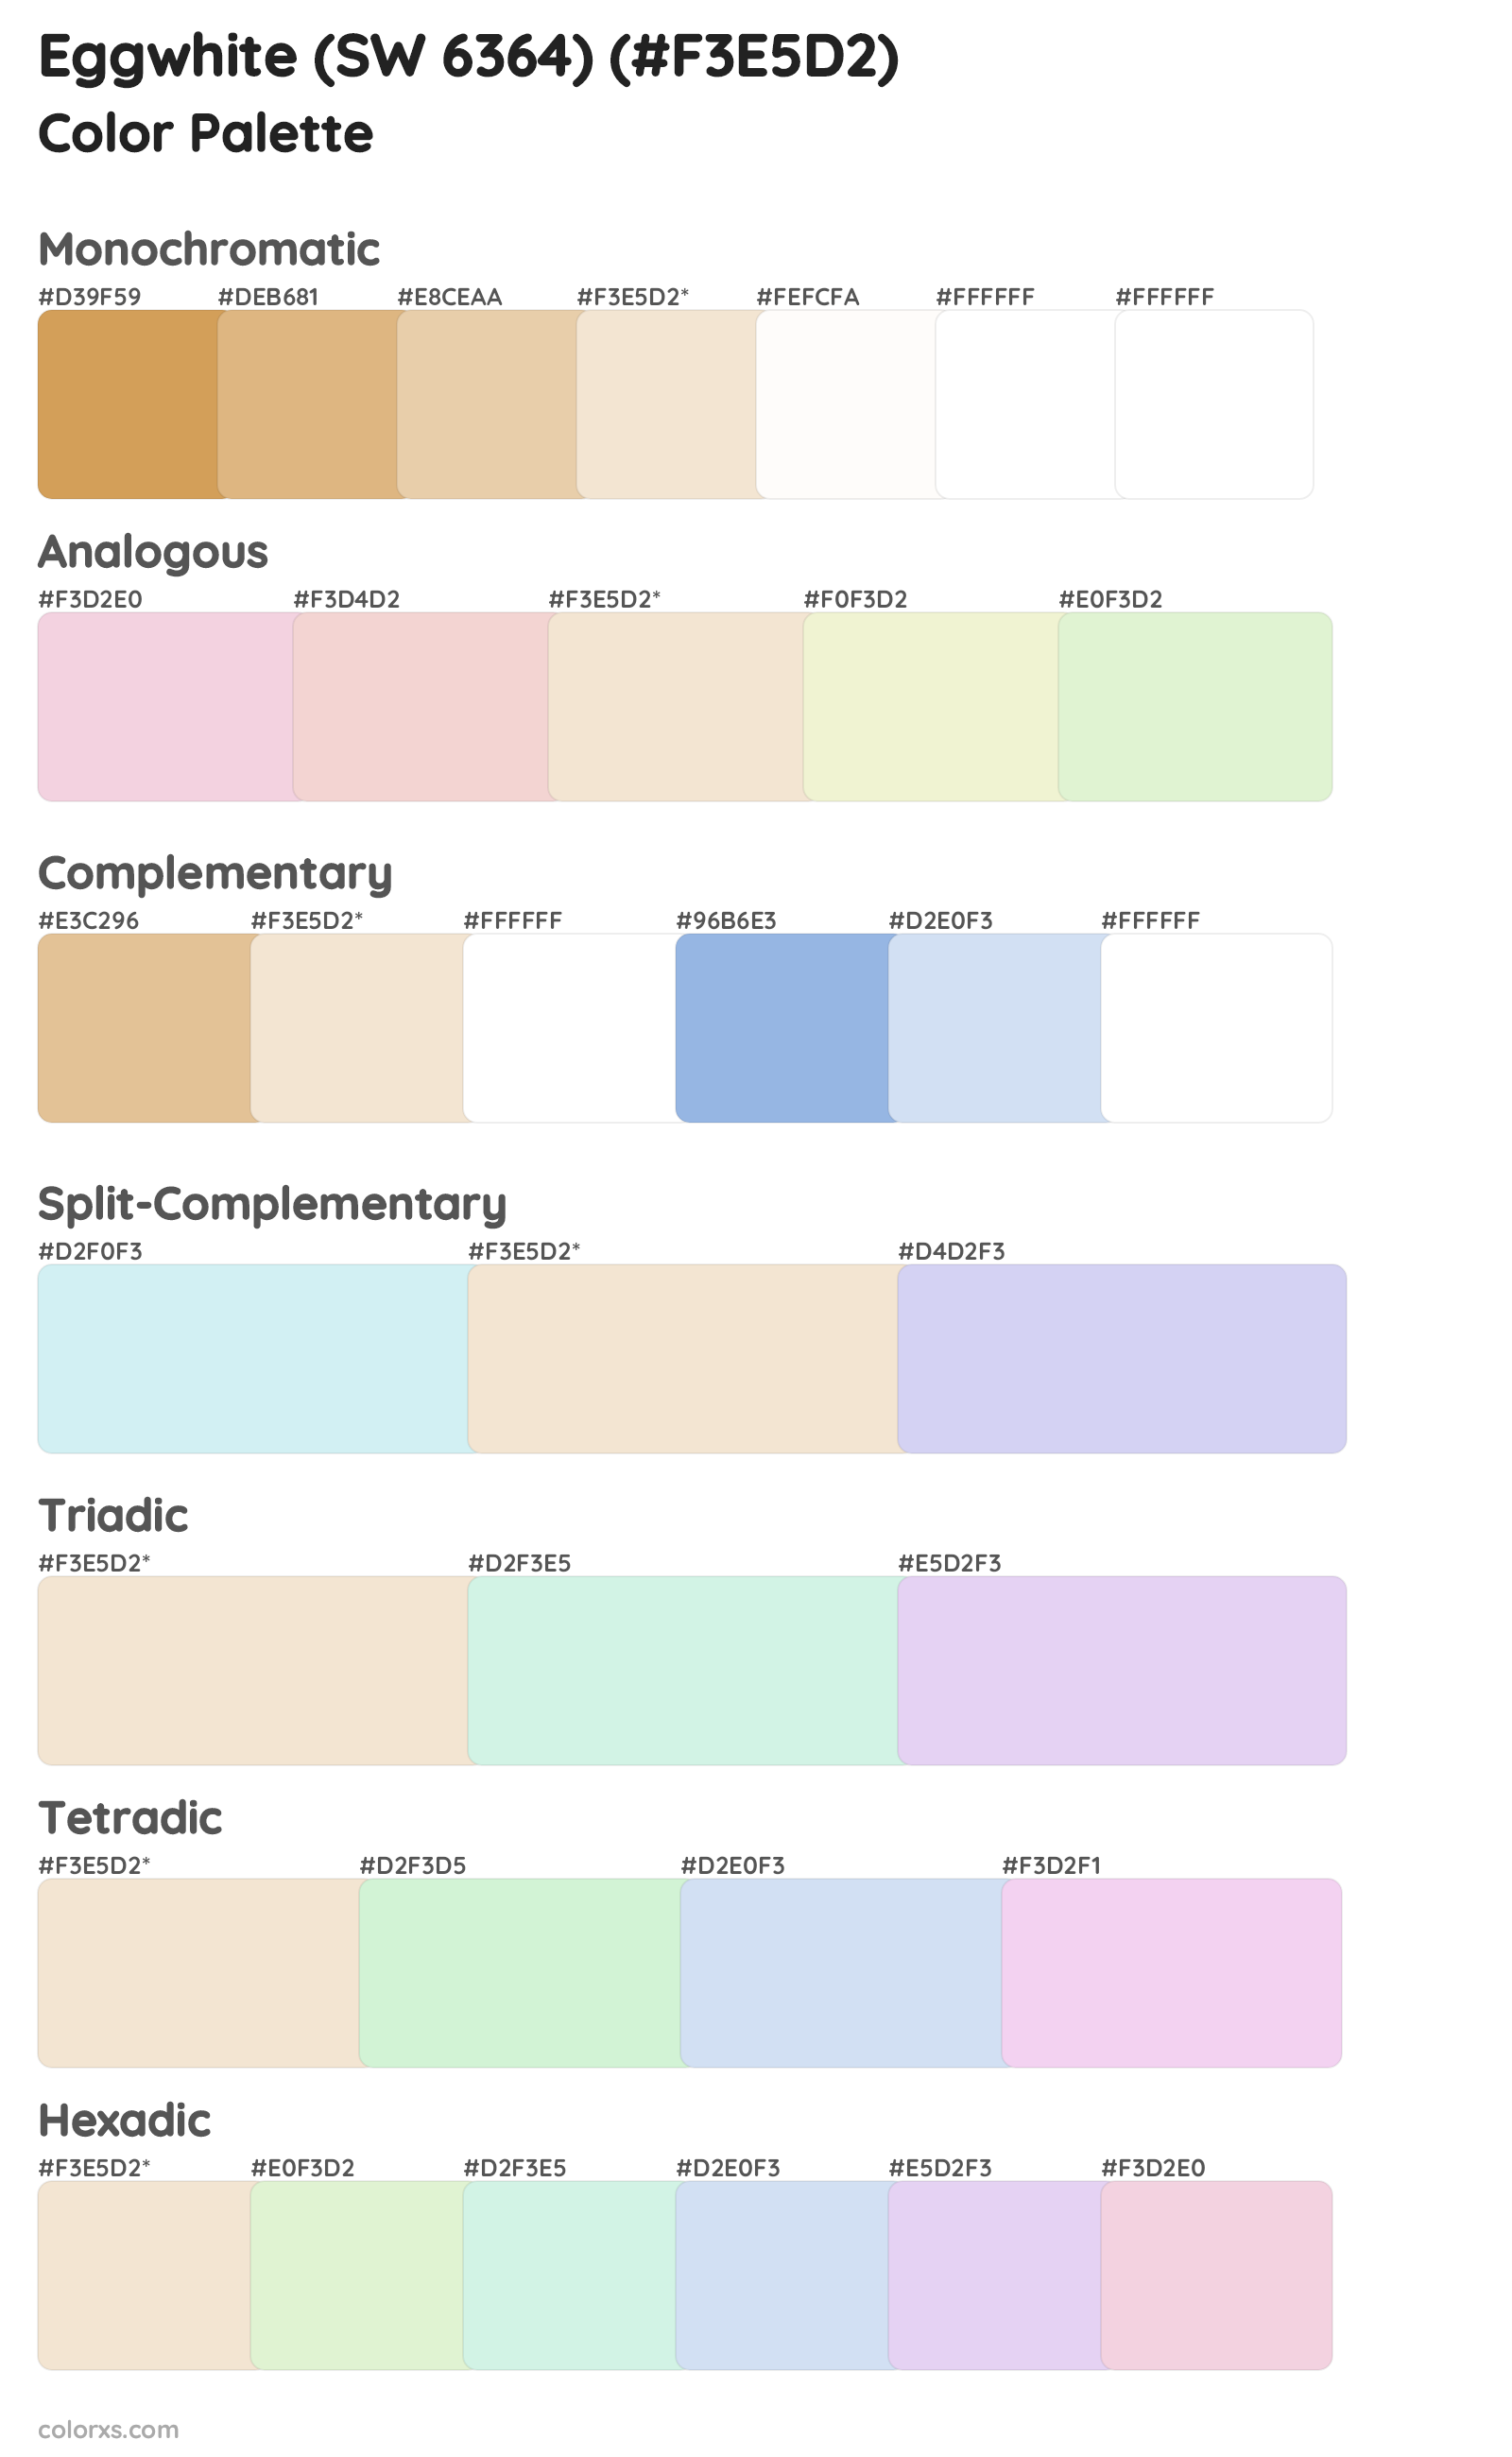 Eggwhite (SW 6364) Color Scheme Palettes